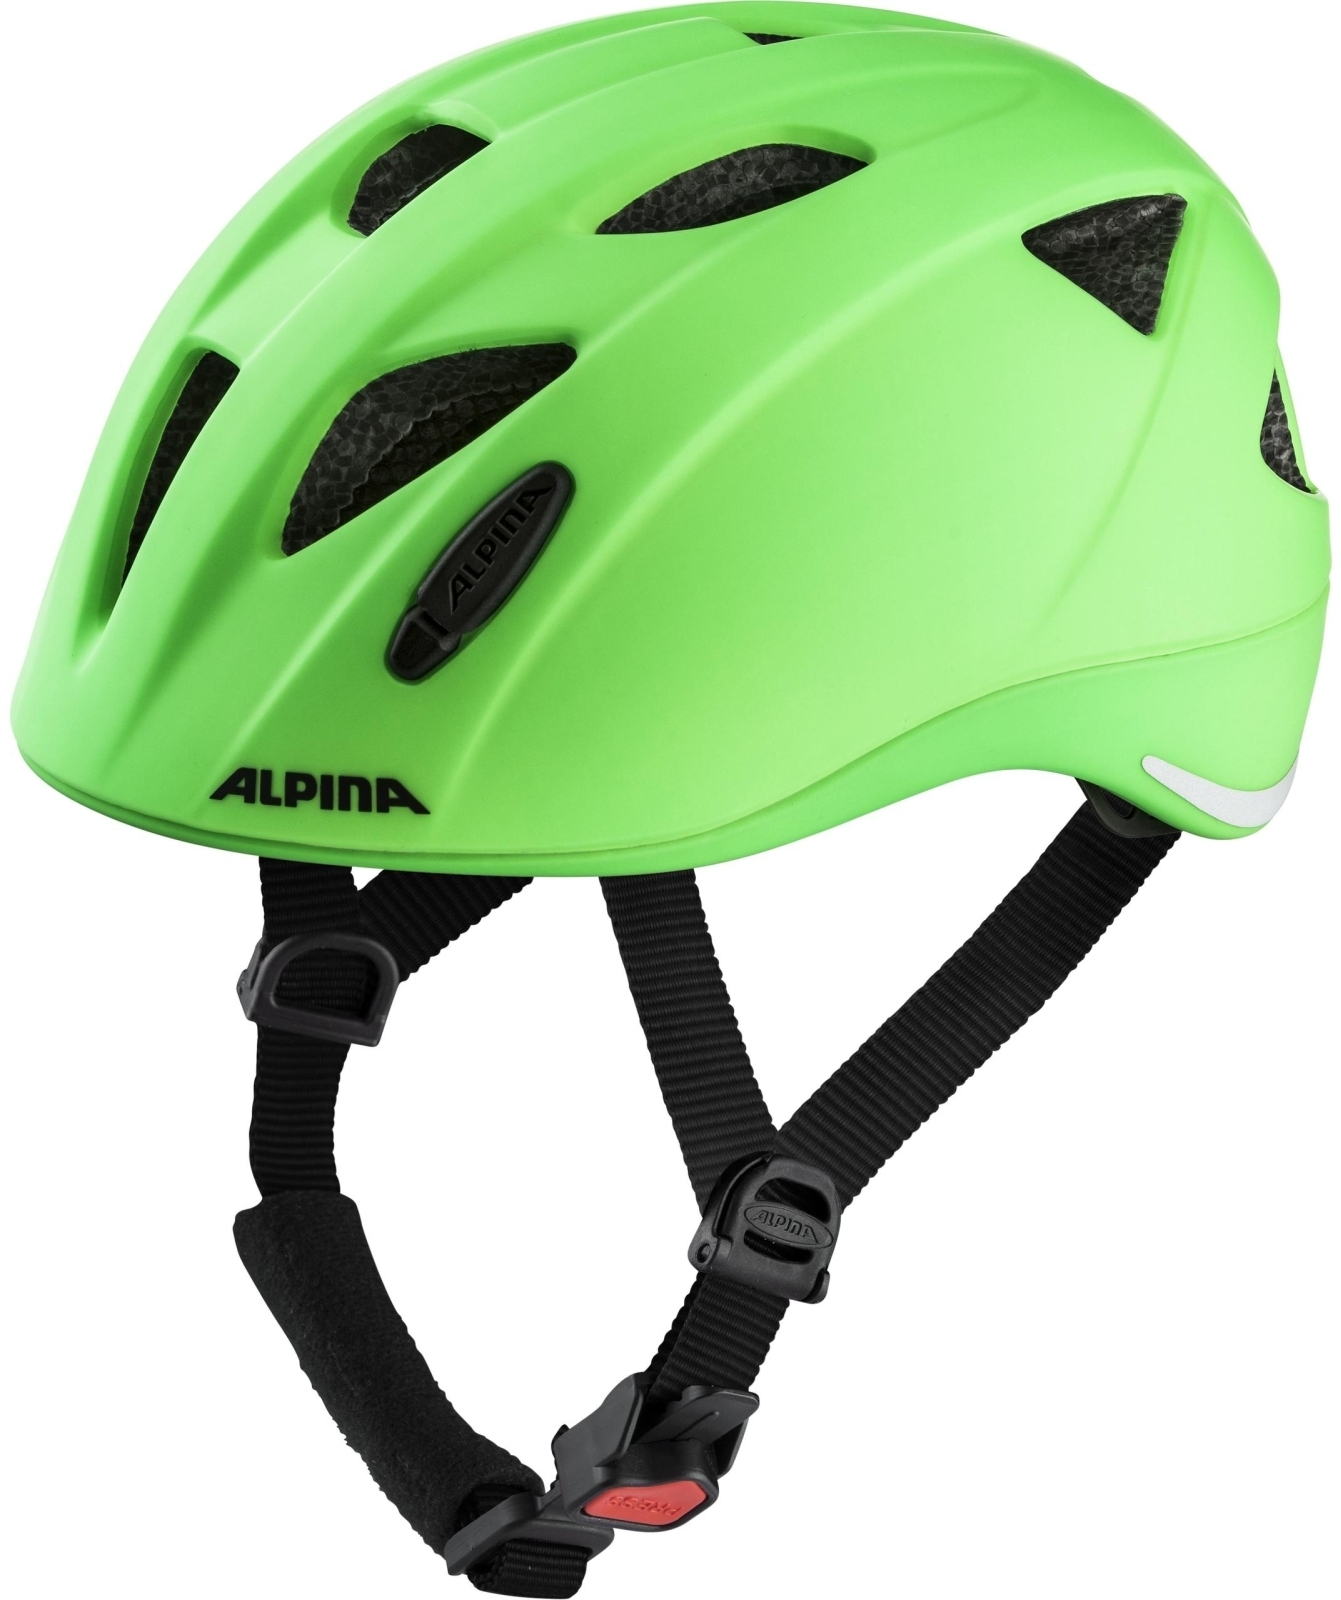 Alpina Ximo L.E. - green 49-54